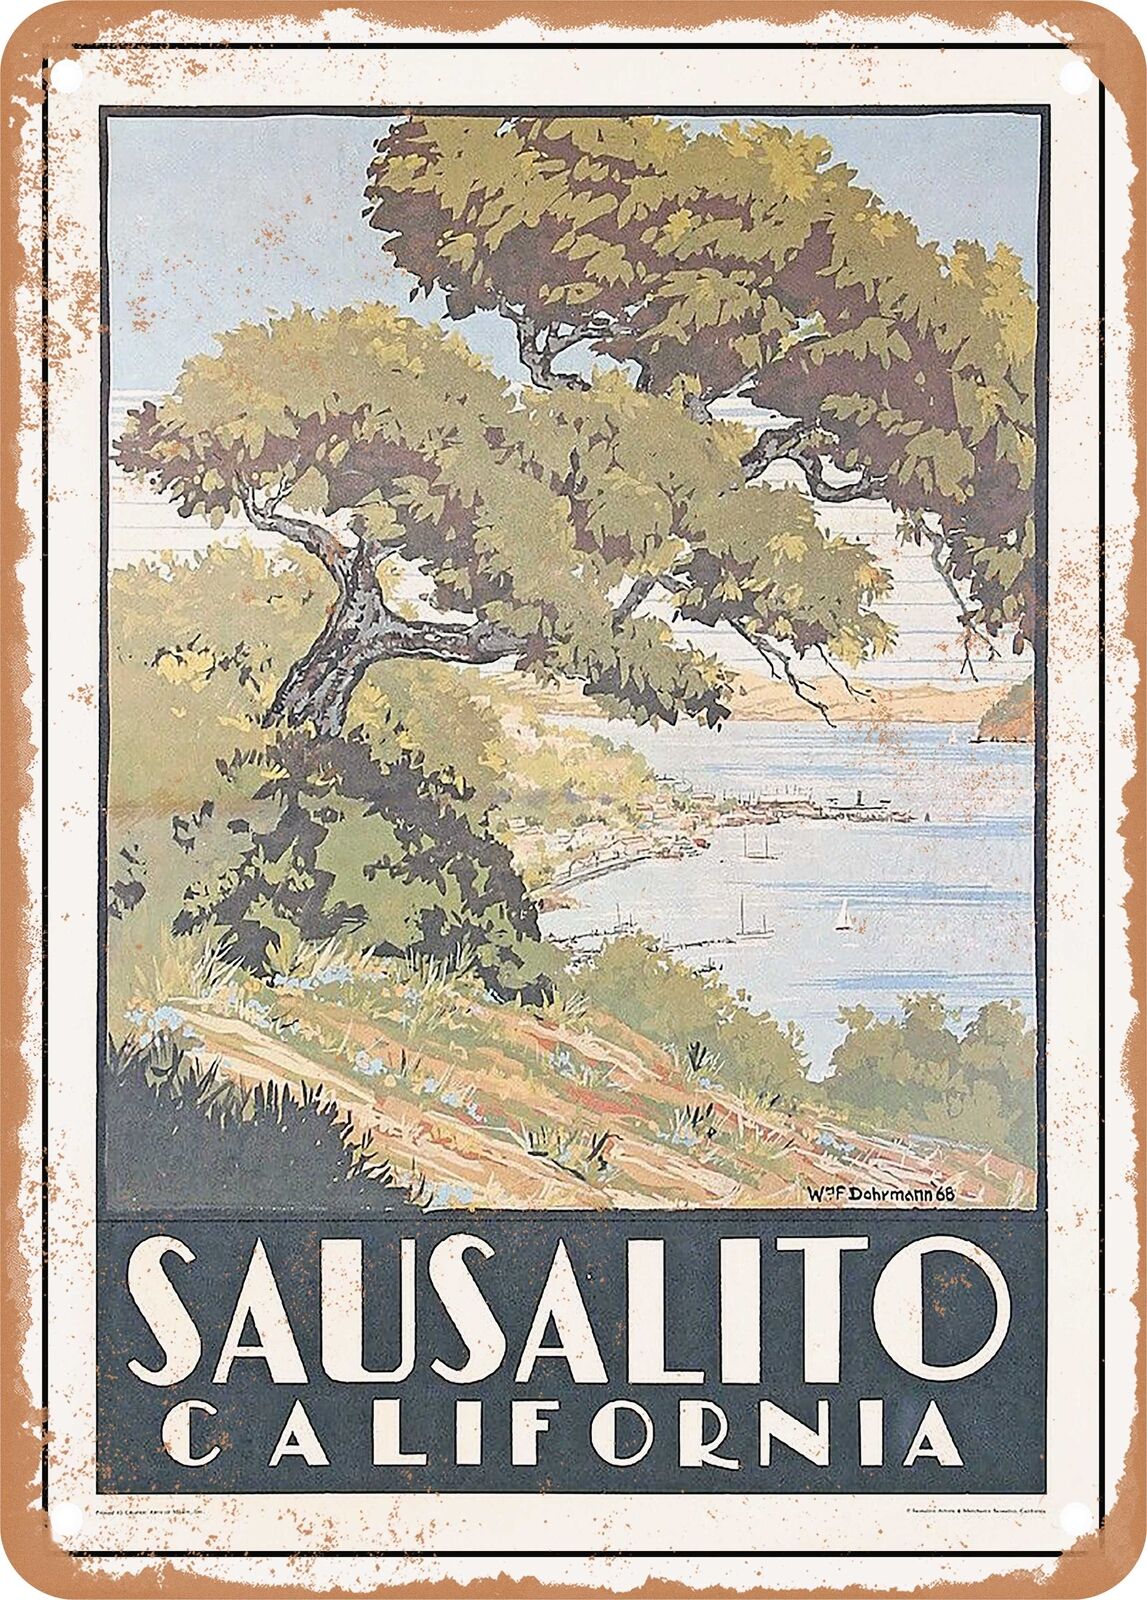 METAL SIGN - 1968 Sausalito California Vintage Ad